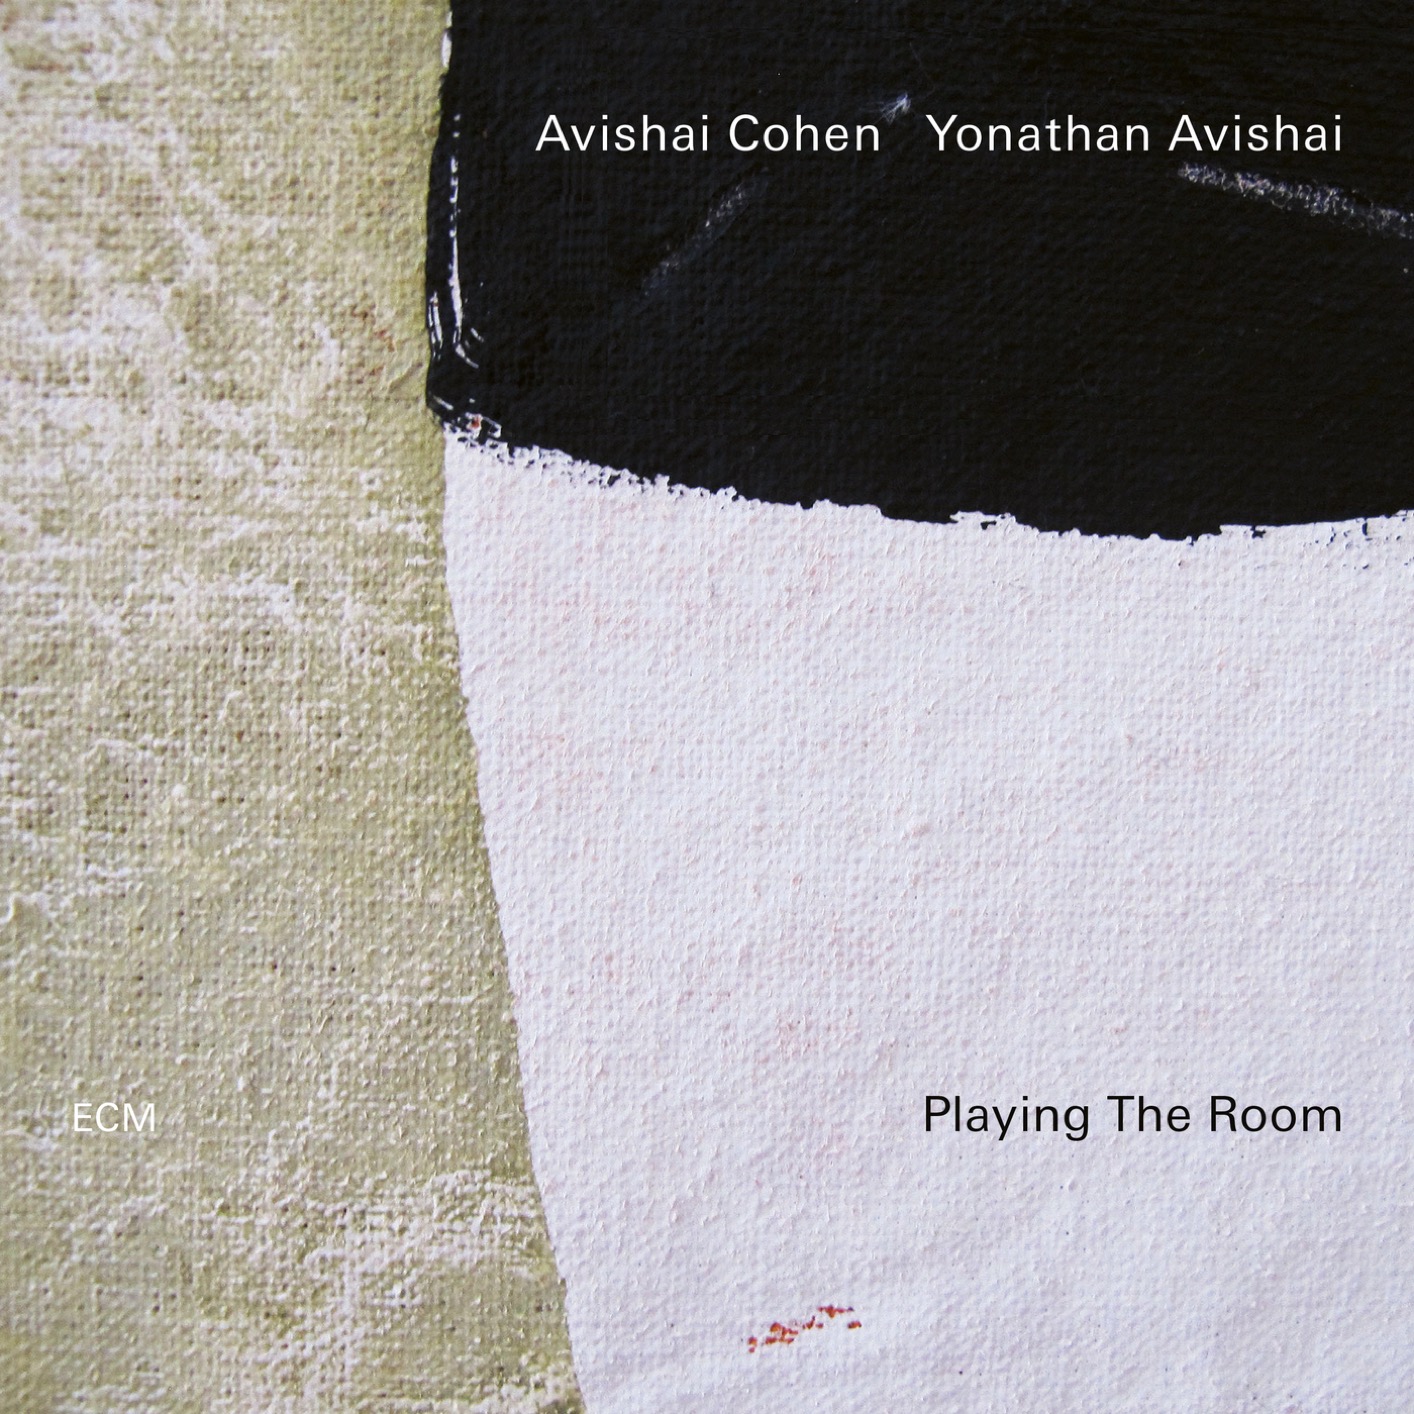 Avishai Cohen & Yonathan Avishai - Playing The Room (2019) [FLAC 24bit/96kHz]